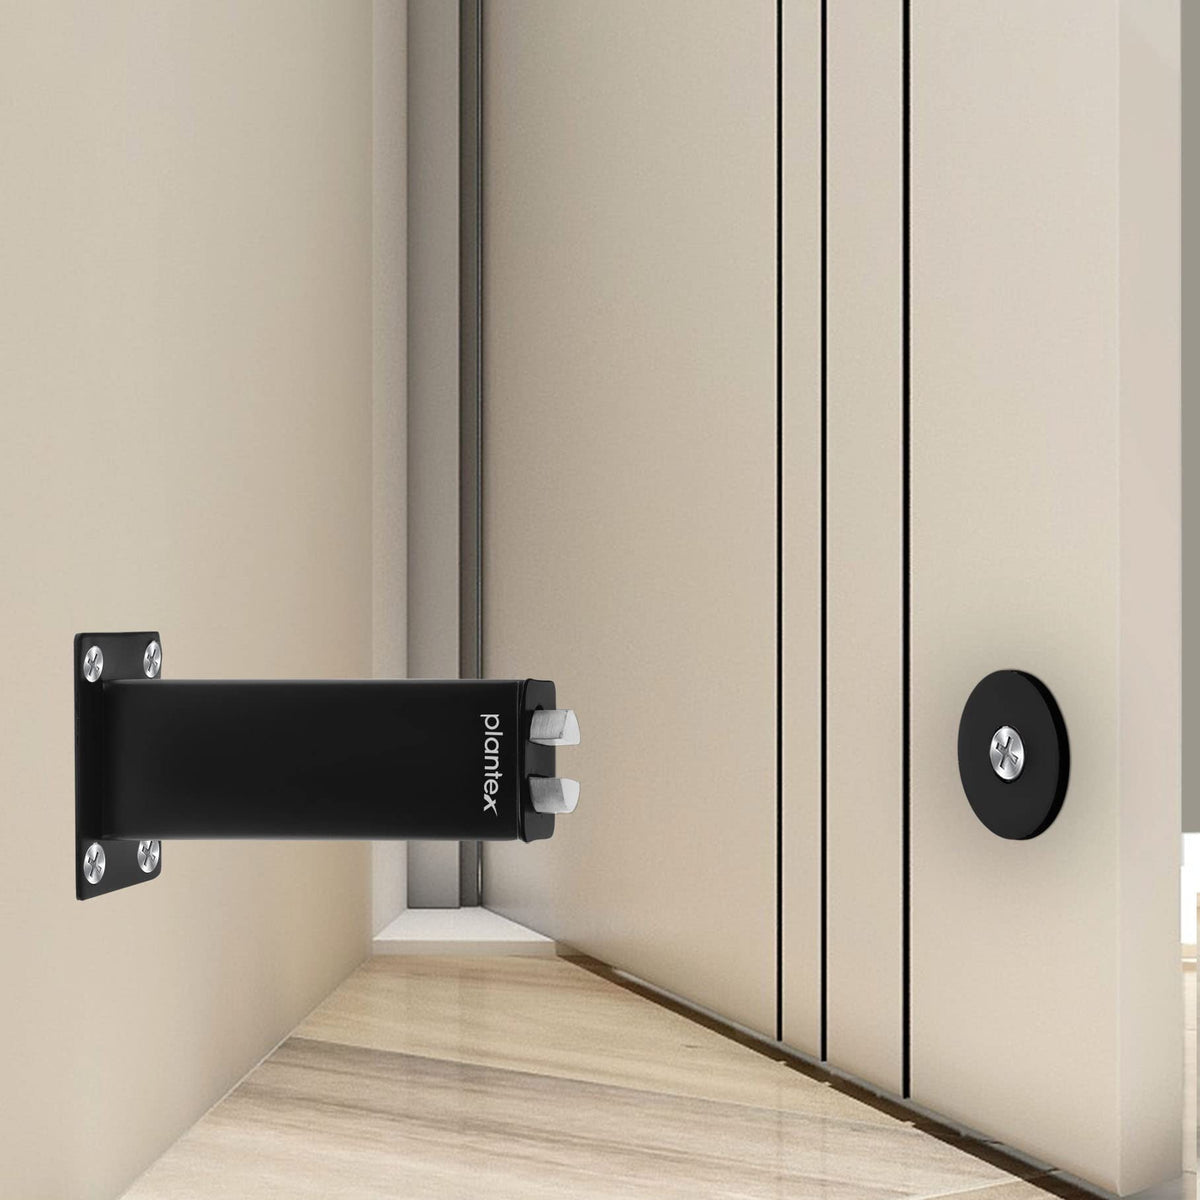 Plantex Stainless Steel Wall-Mounted Magnetic Door Stopper/Door Magnets to Hold Door/Door Catcher for Wooden Door - Pack of 1 (Matt Black)